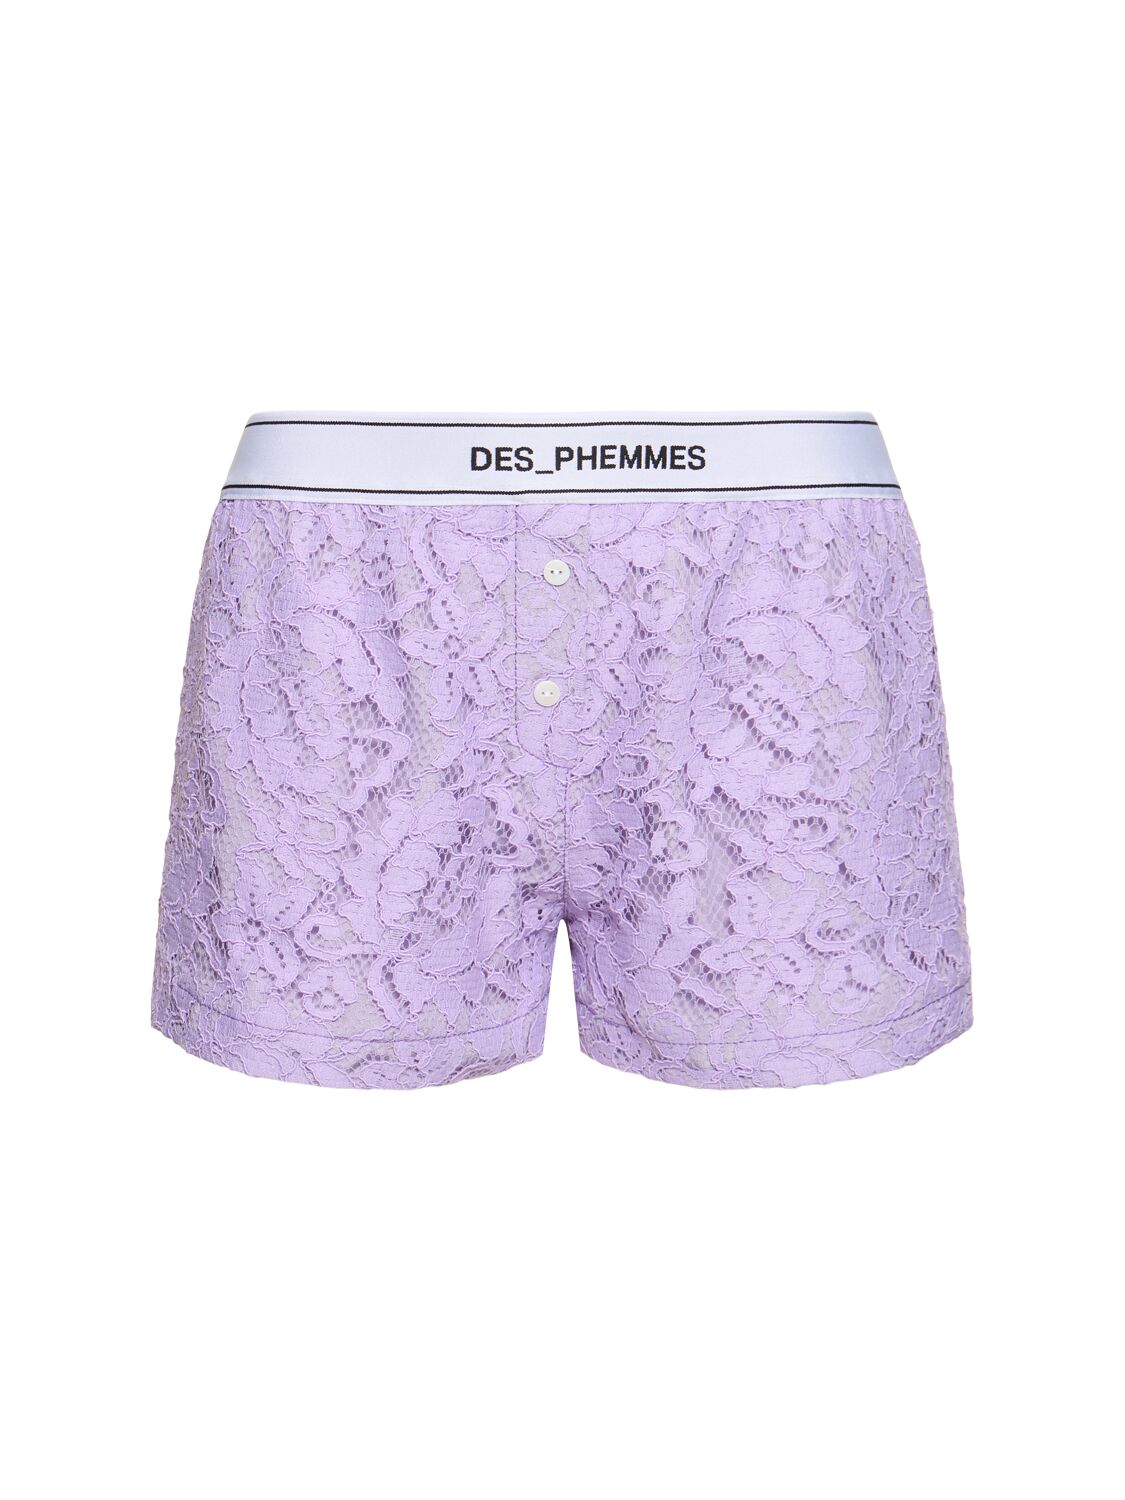 DES PHEMMES Macramé Lace Shorts